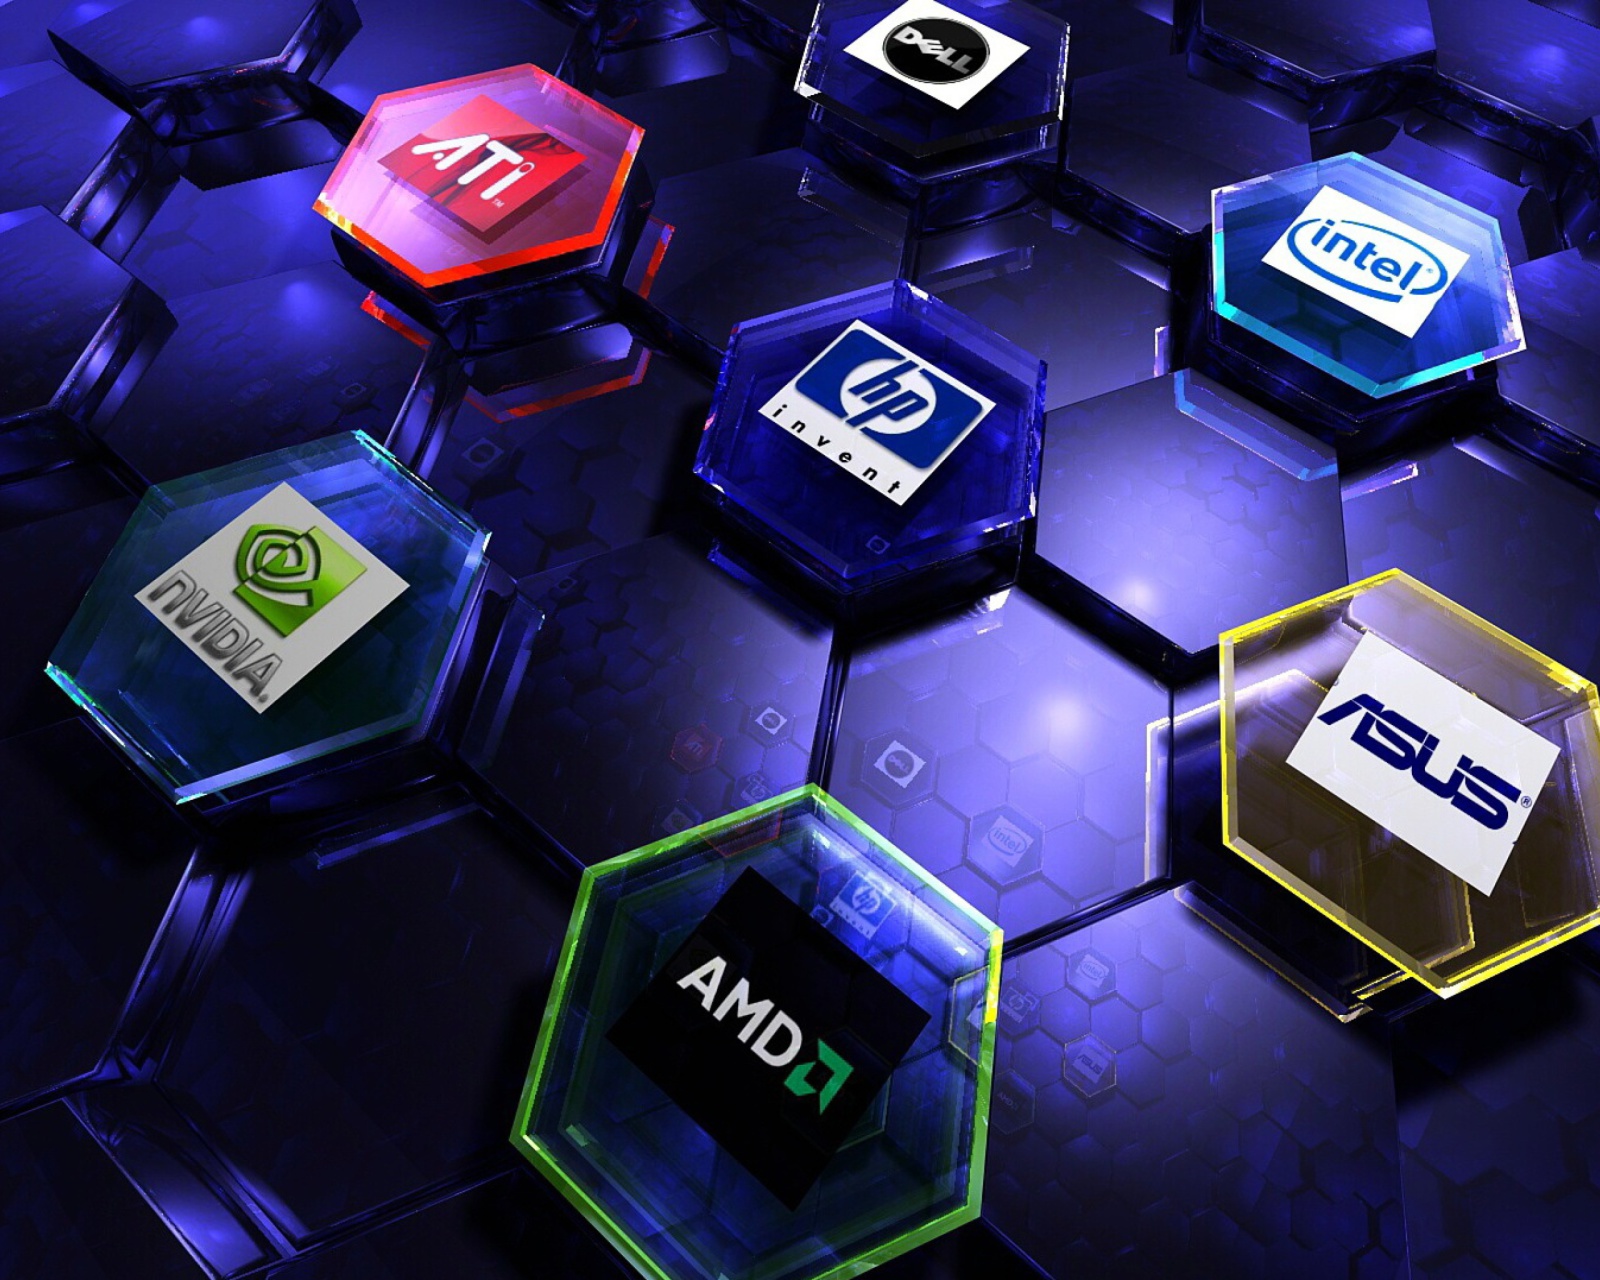 Обои Hi-Tech Logos: AMD, HP, Ati, Nvidia, Asus 1600x1280